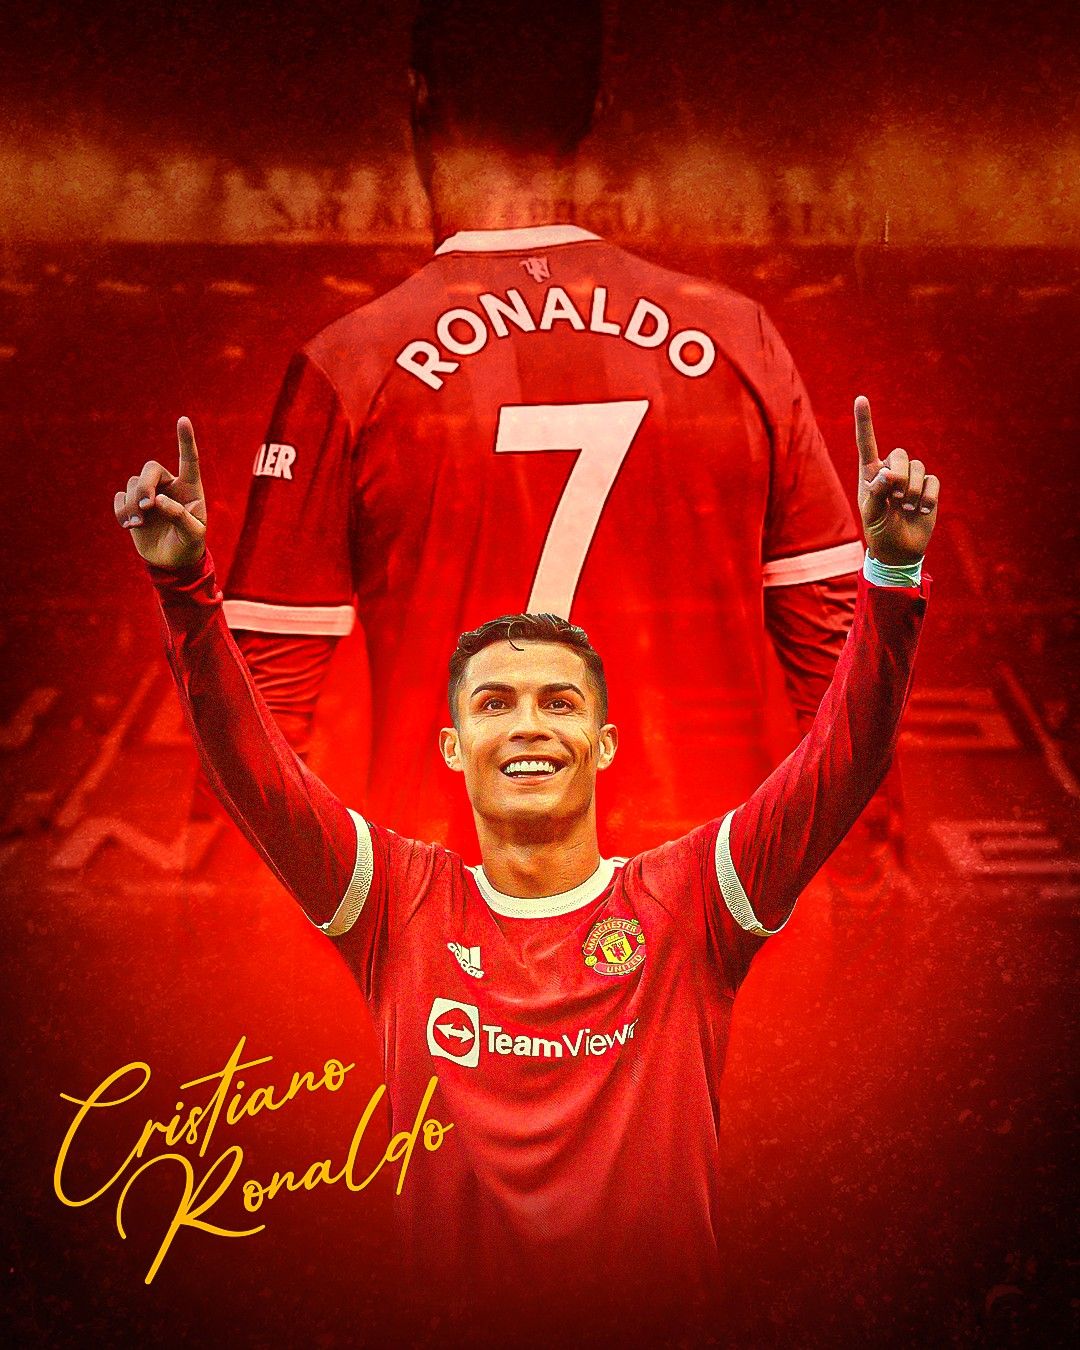 Ronaldo cao bao nhiêu thông tin về cầu thủ CR7 mới nhất